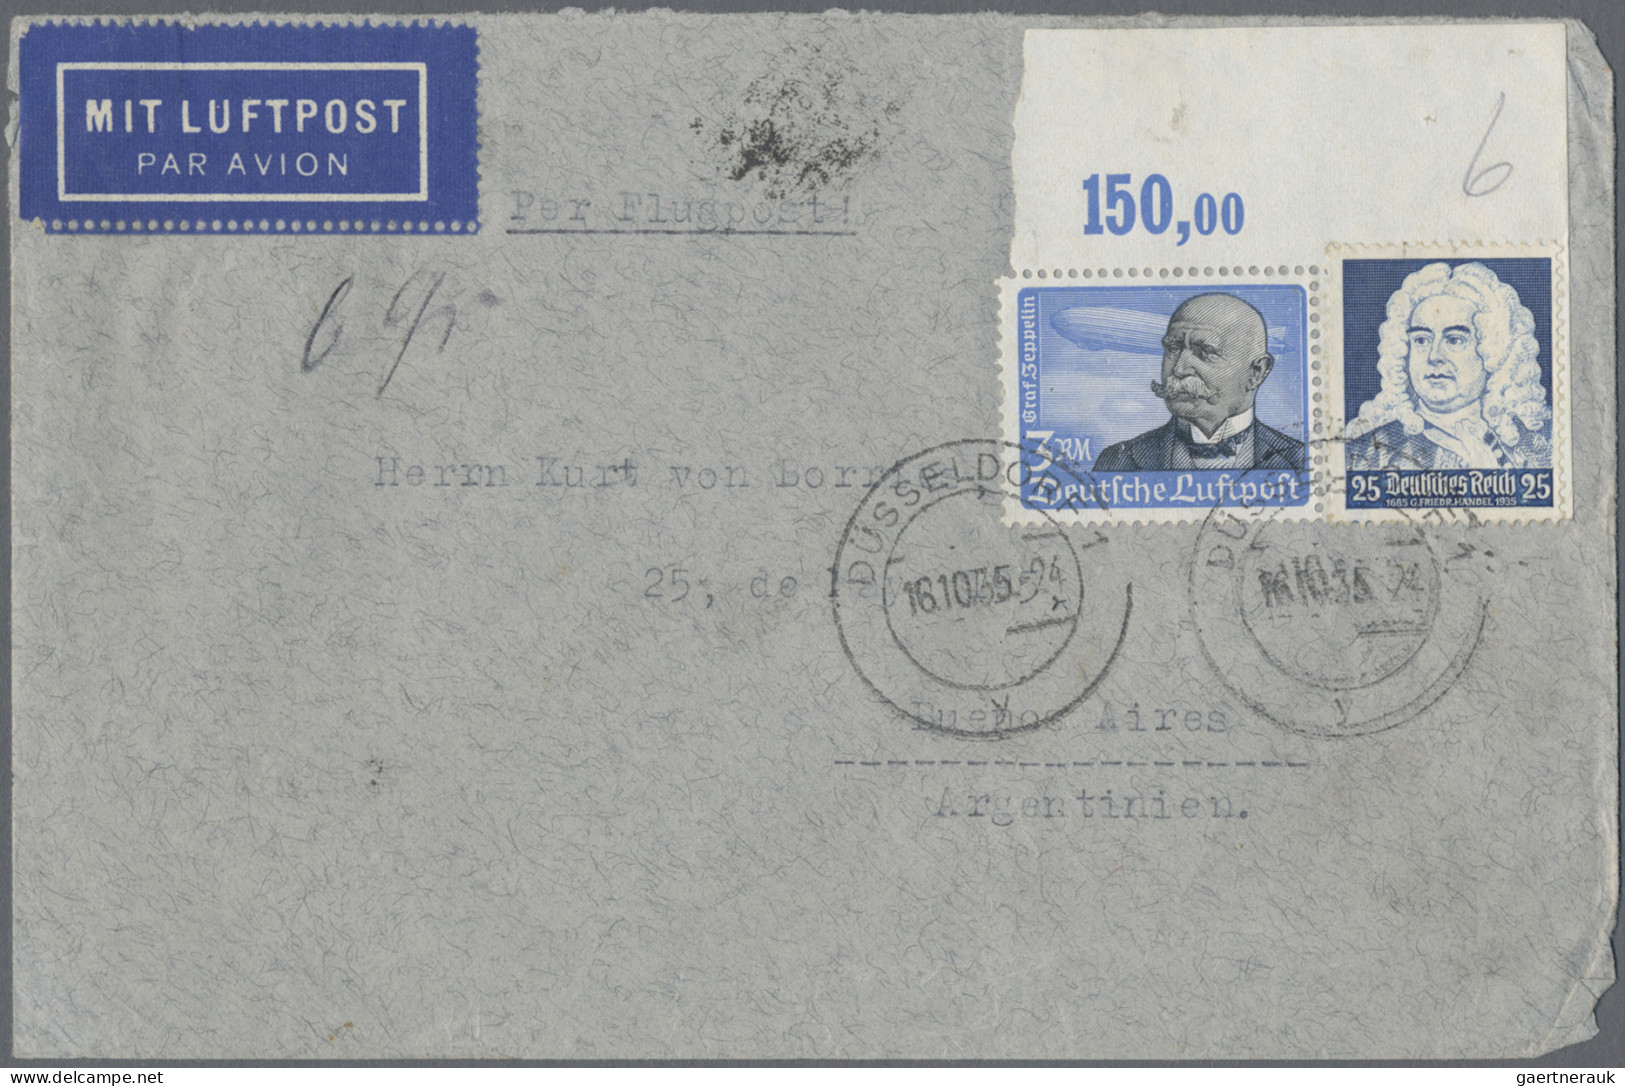 Nachlässe: 1933/1945, III.REICH, Nachlass-Posten mit ca. 90 Briefen, Karten und